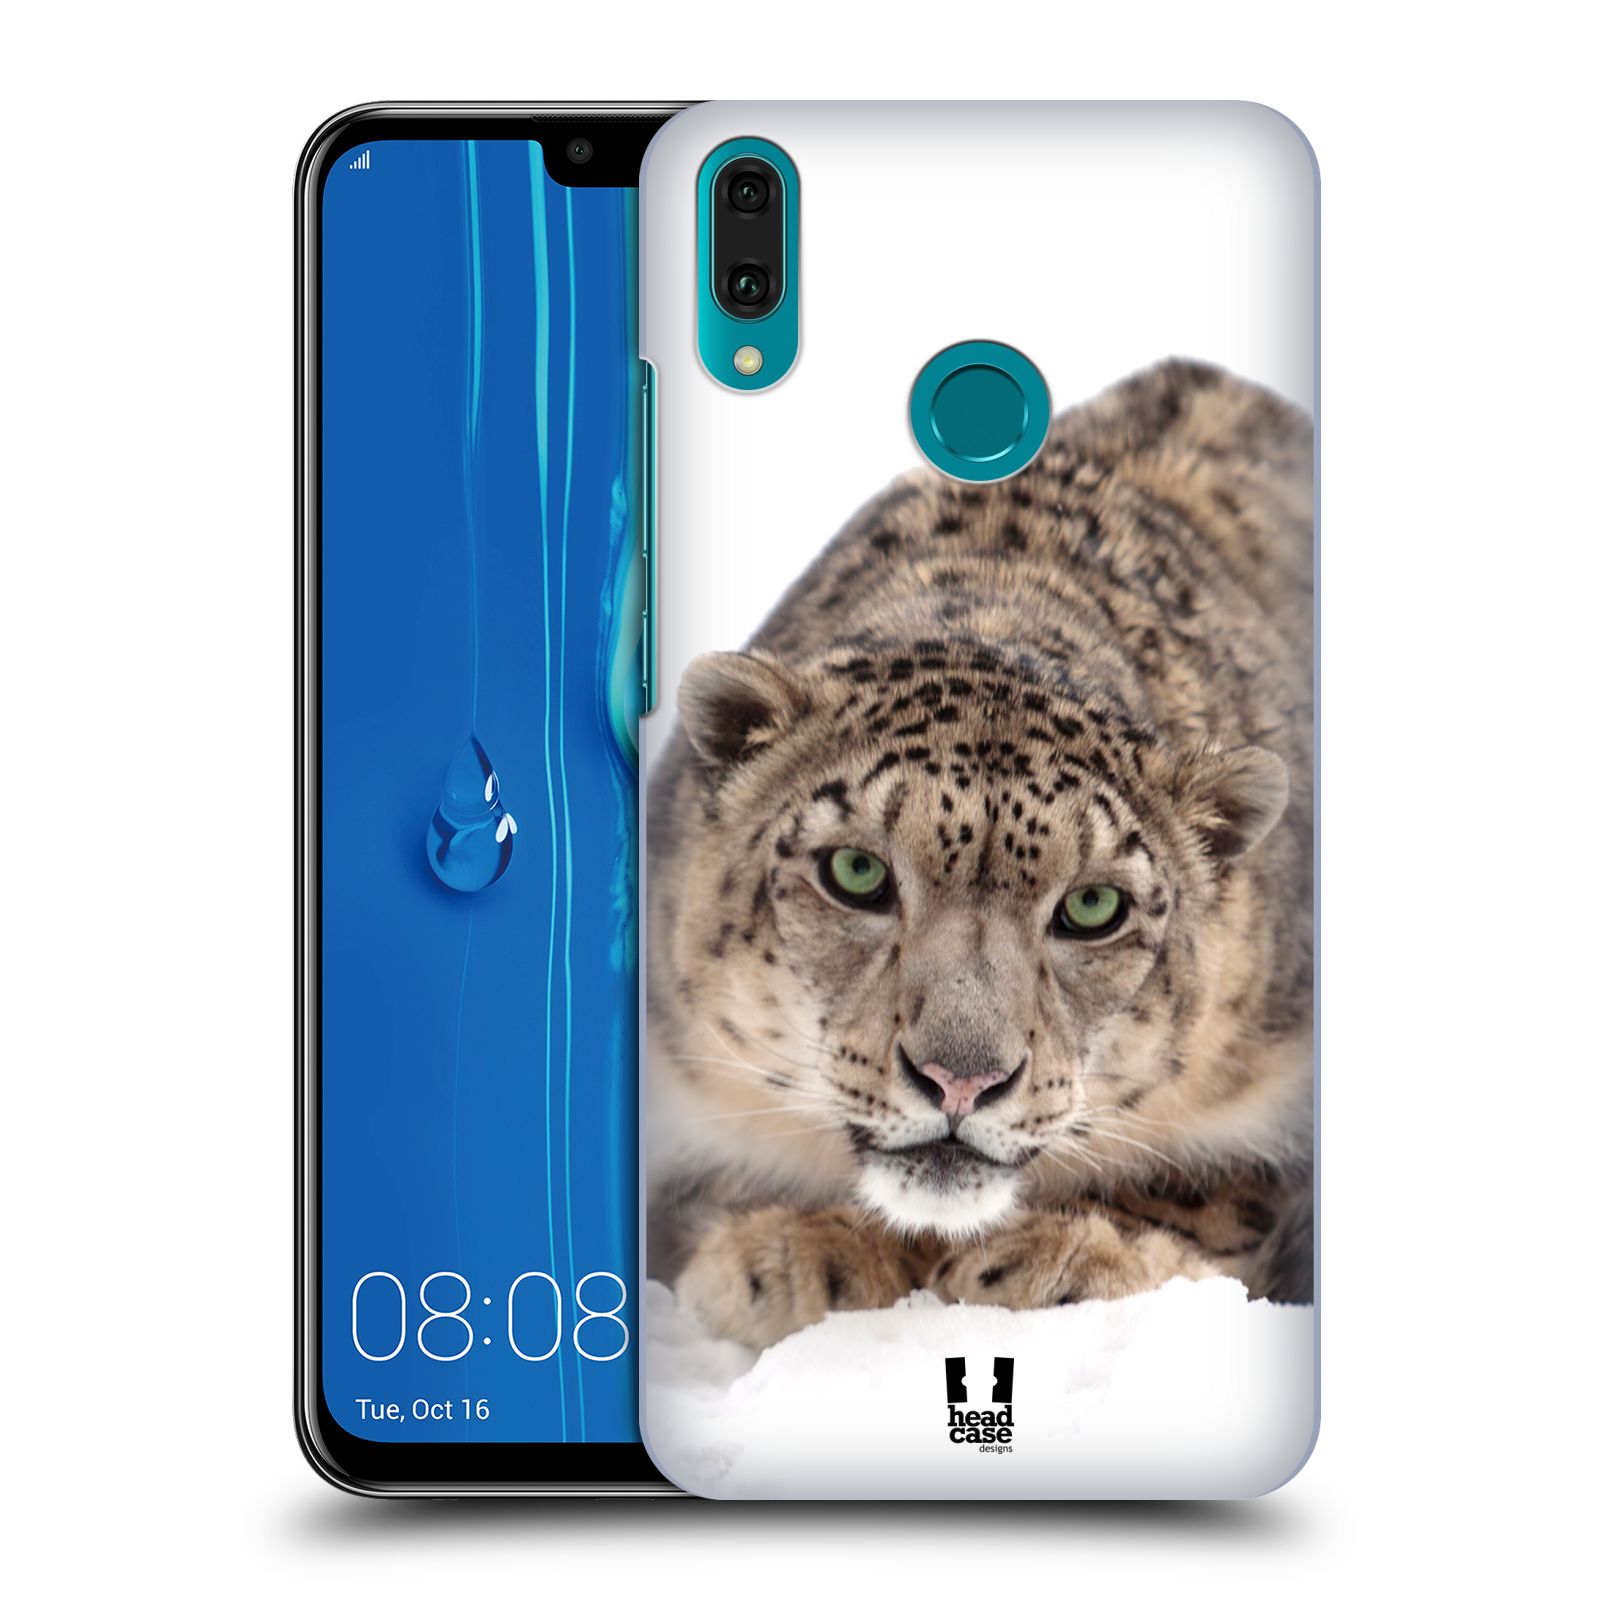 Pouzdro na mobil Huawei Y9 2019 - HEAD CASE - vzor Divočina, Divoký život a zvířata foto SNĚŽNÝ LEOPARD